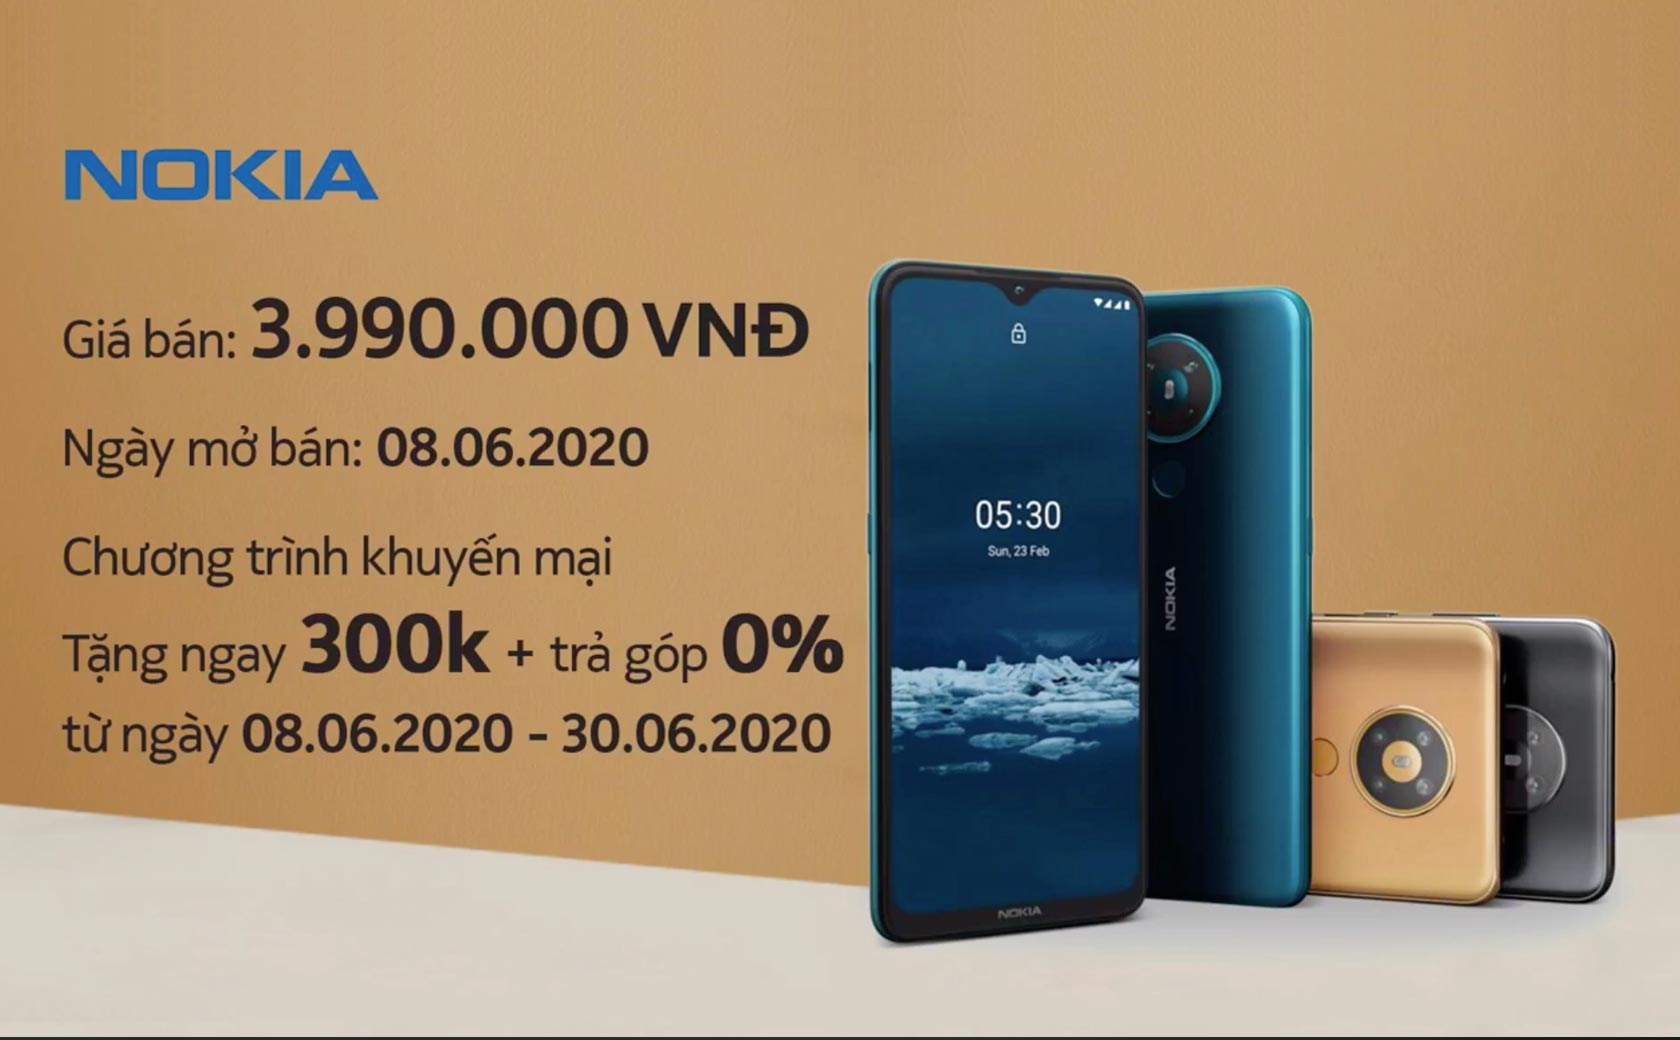 Nokia 5.3 ra mắt tại Việt Nam với giá 3,99 triệu; bán ra từ 08/06